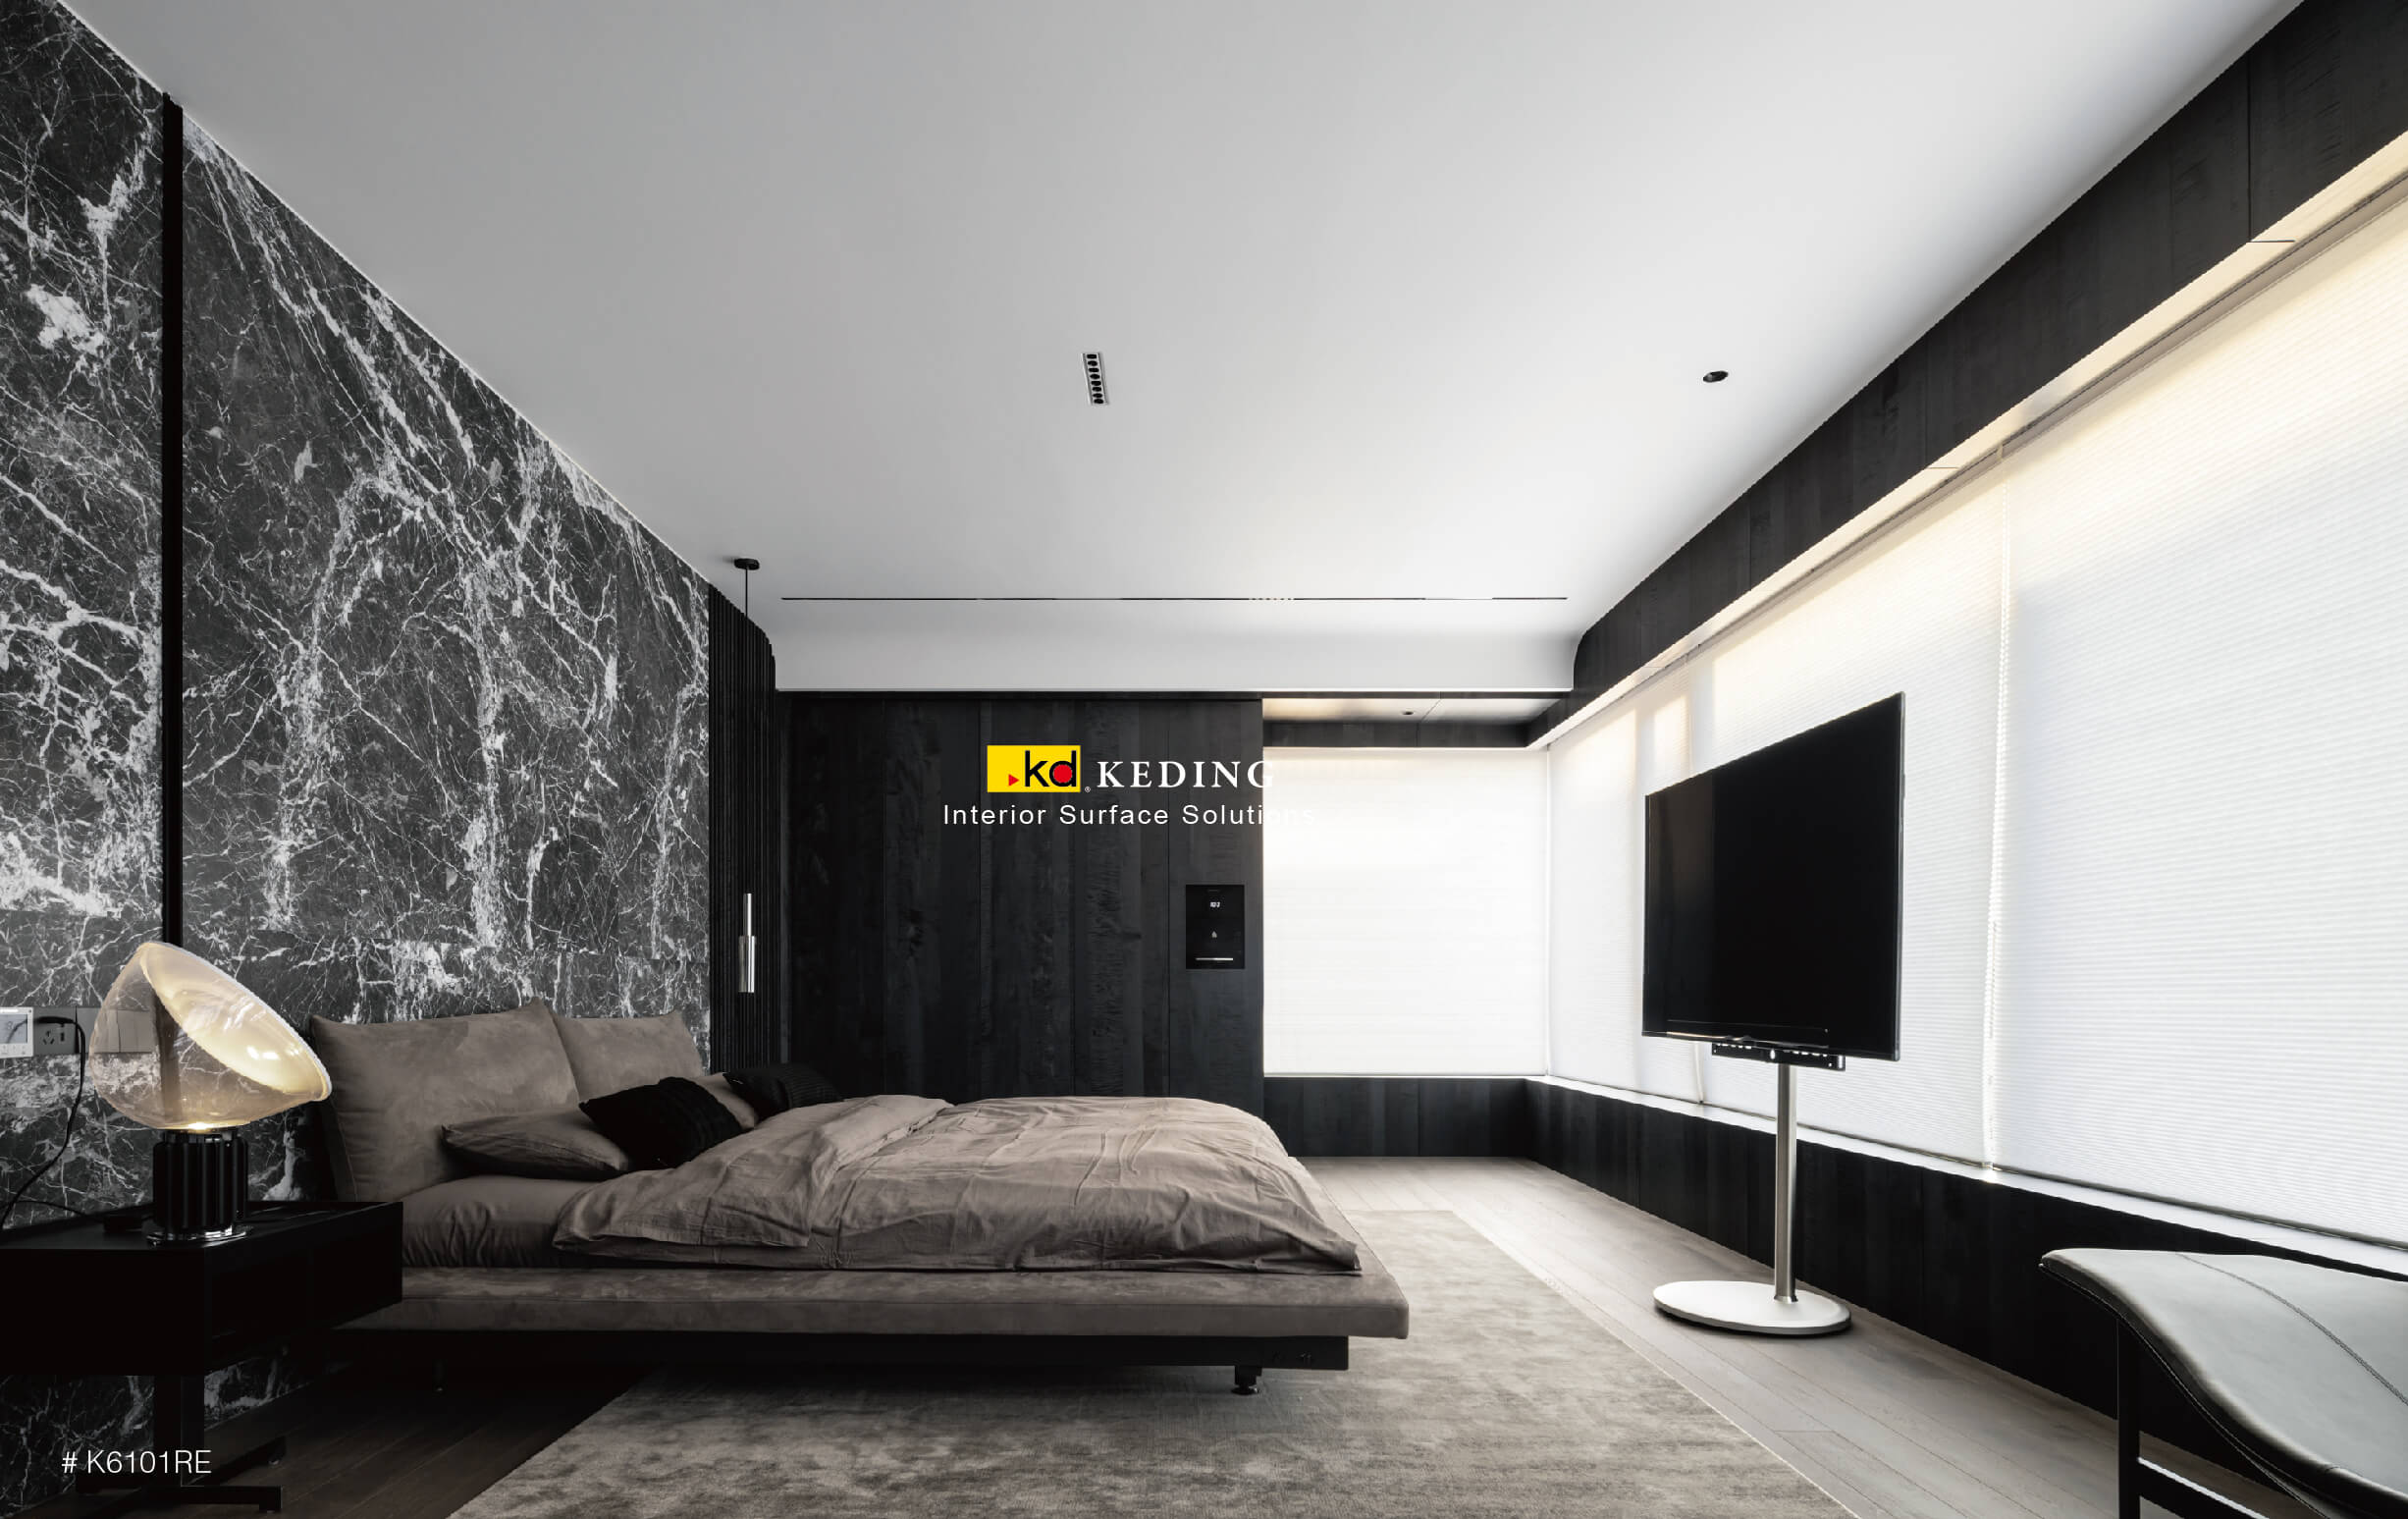 Phòng ngủ hiện đại với các tấm veneer gỗ vân đen phong phú, tường nhấn bằng đá cẩm thạch đen trắng, đồ nội thất trung tính và cửa sổ lớn.